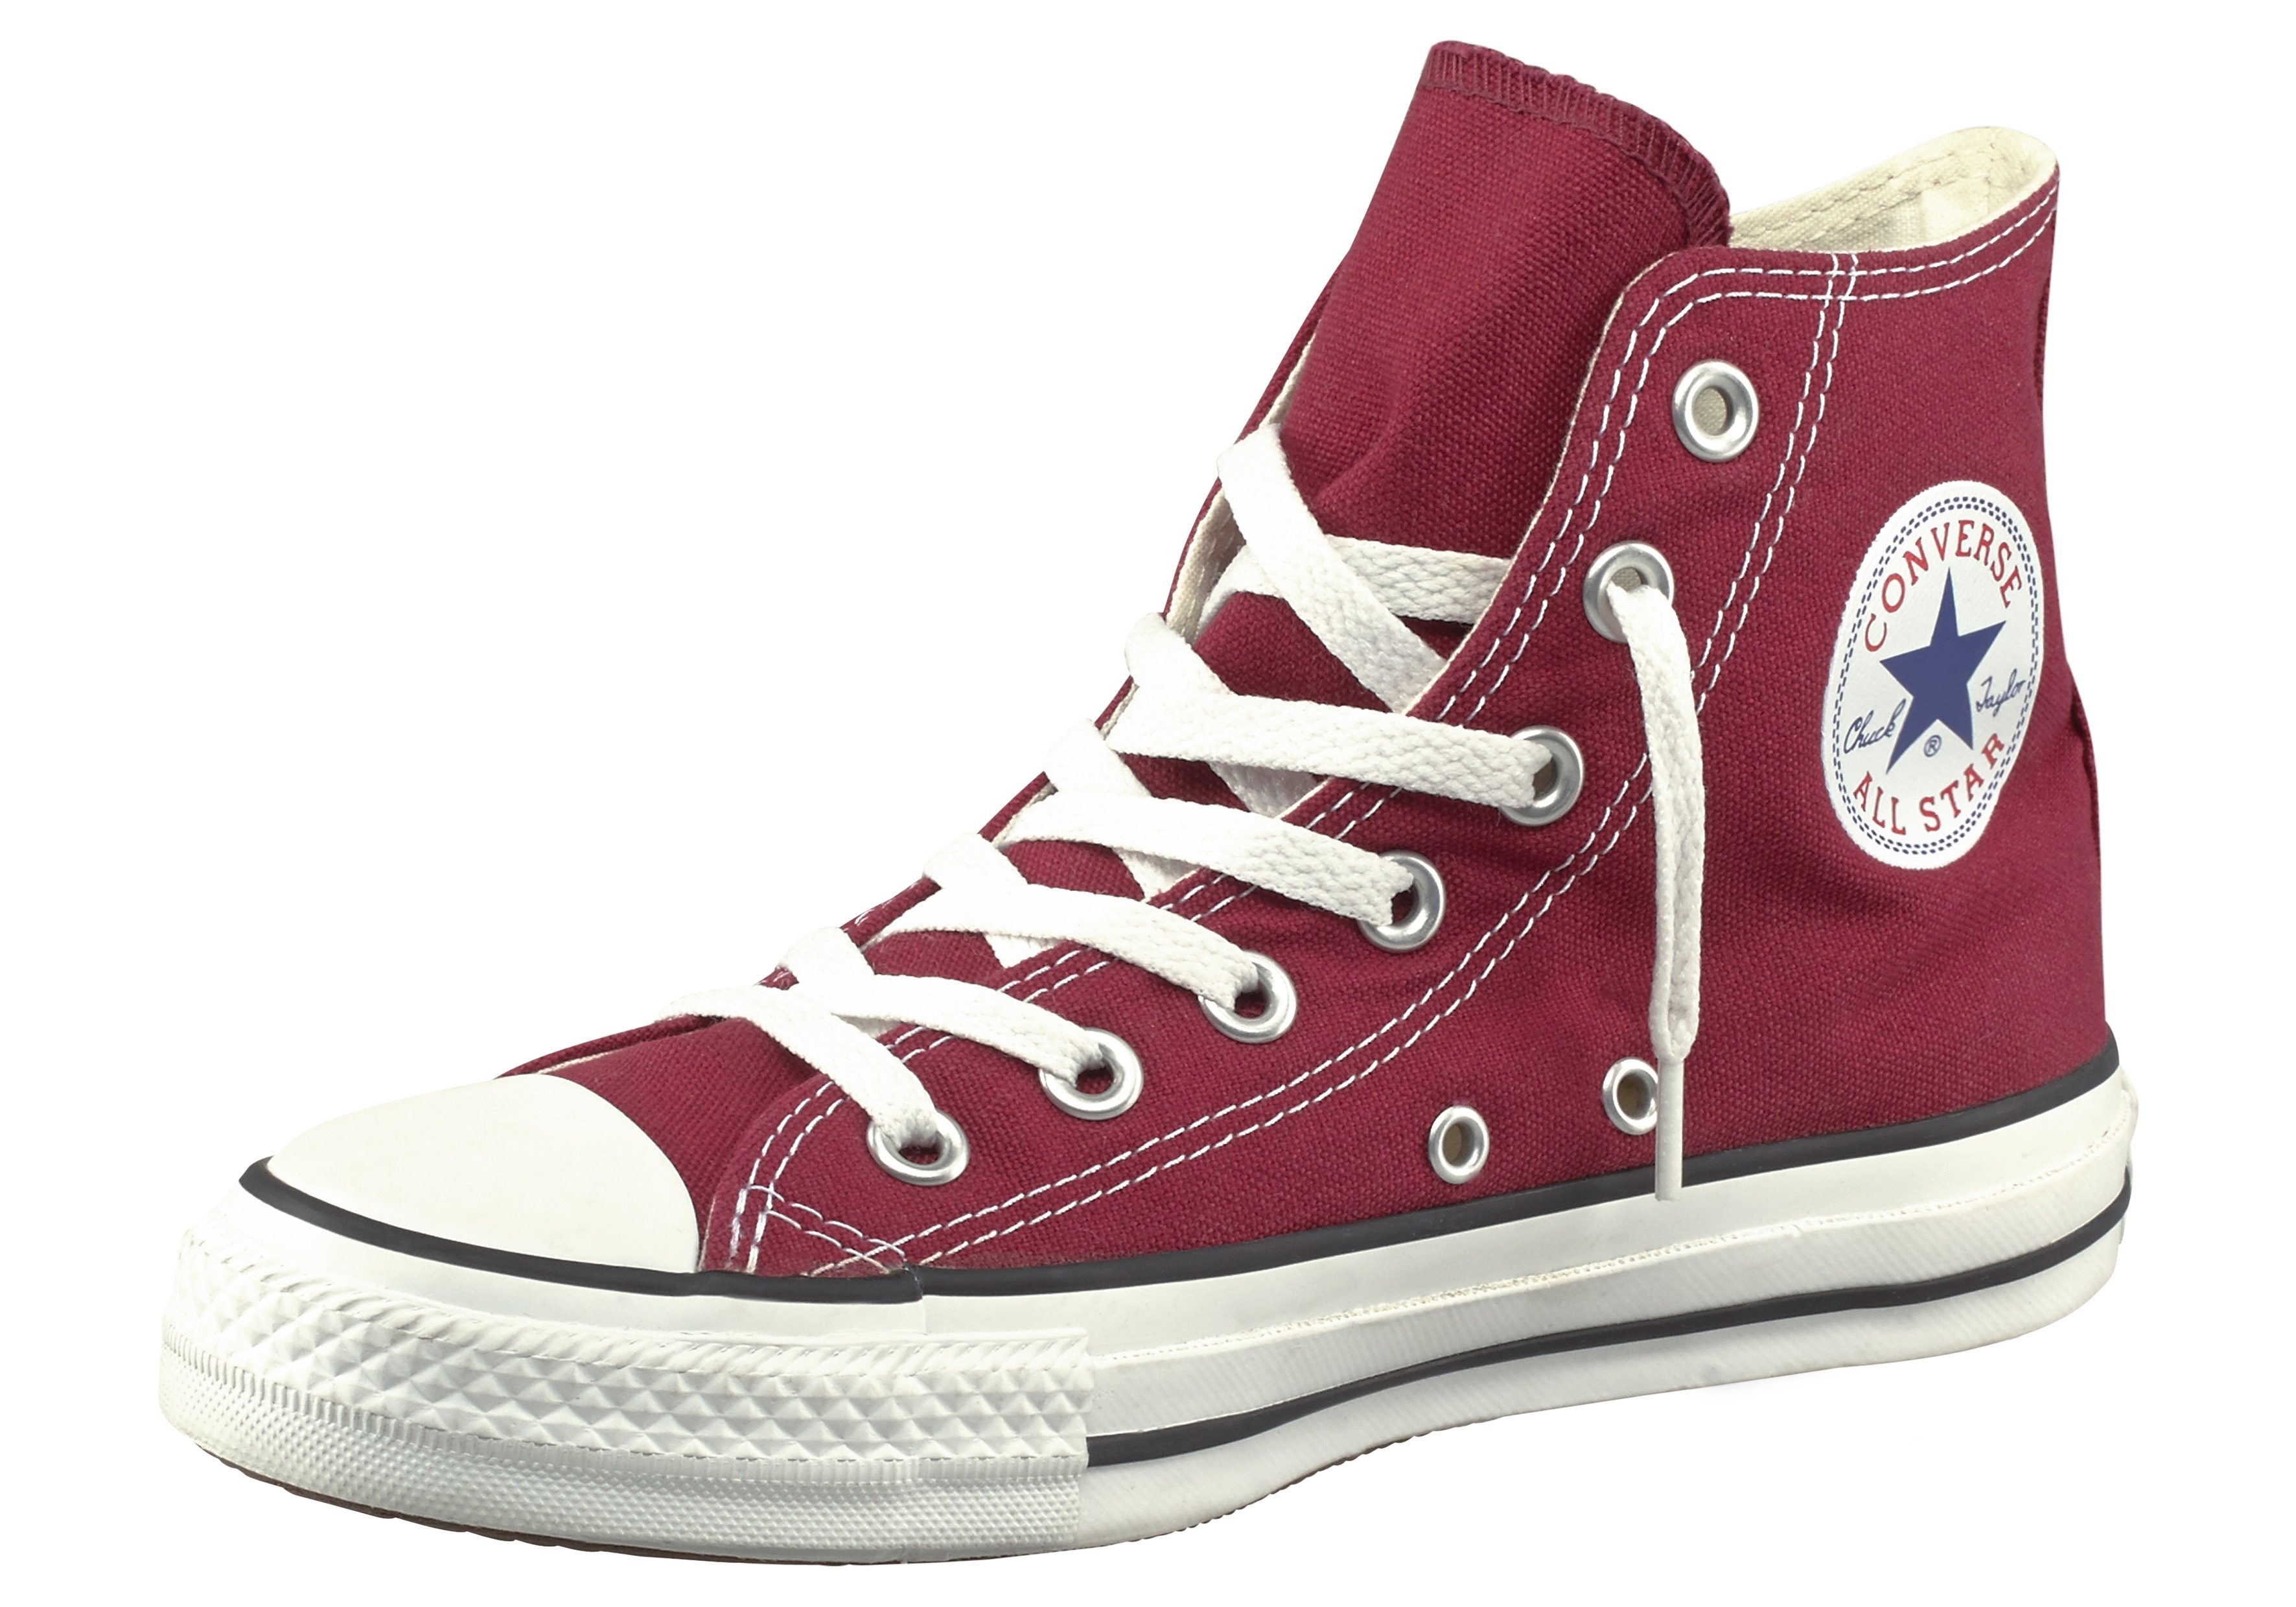 Converse Schuhe online kaufen | OTTO